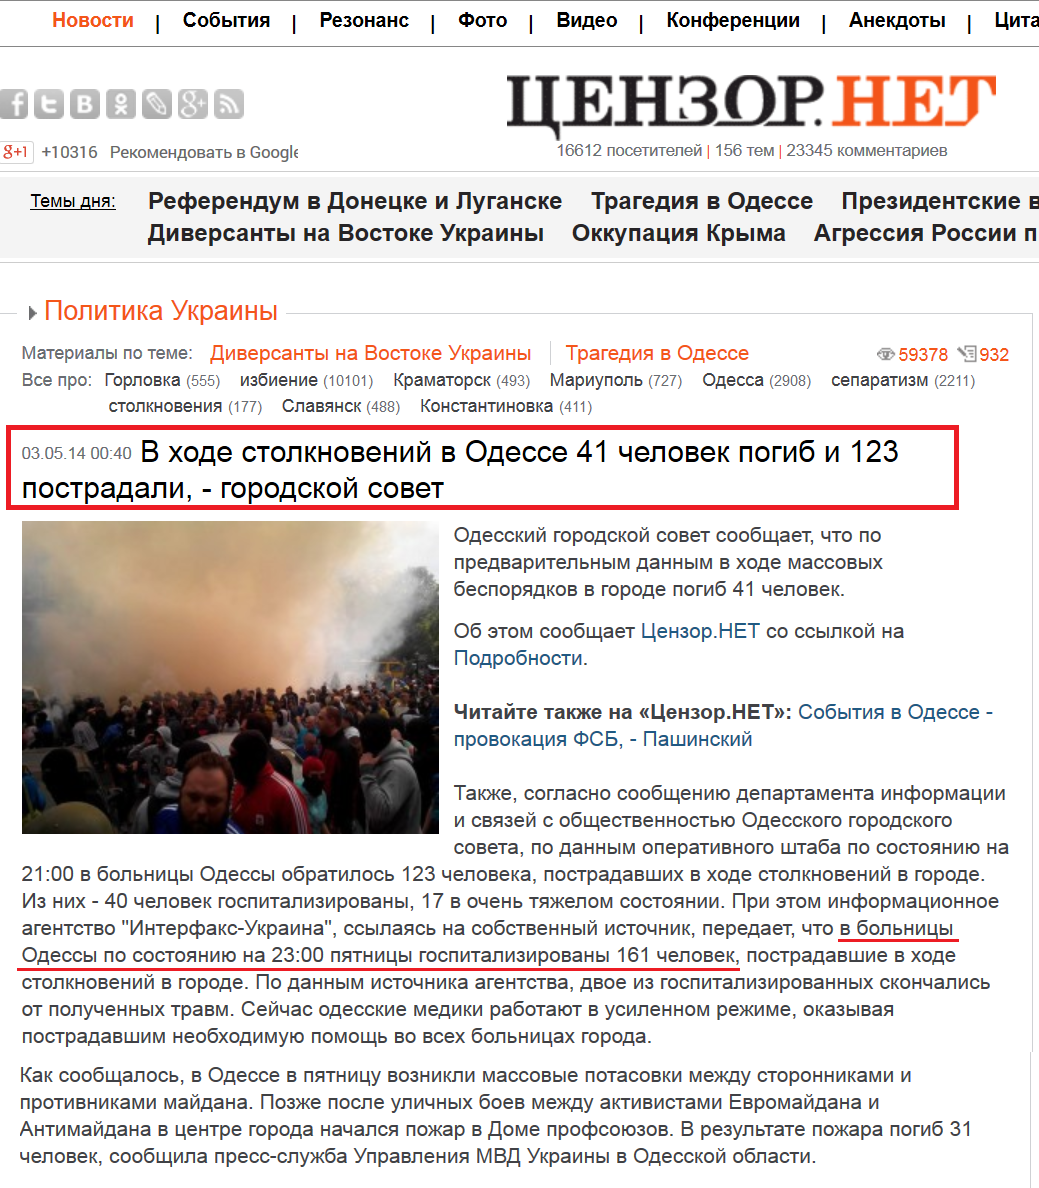 http://censor.net.ua/news/283699/v_hode_stolknoveniyi_v_odesse_41_chelovek_pogib_i_123_postradali_gorodskoyi_sovet